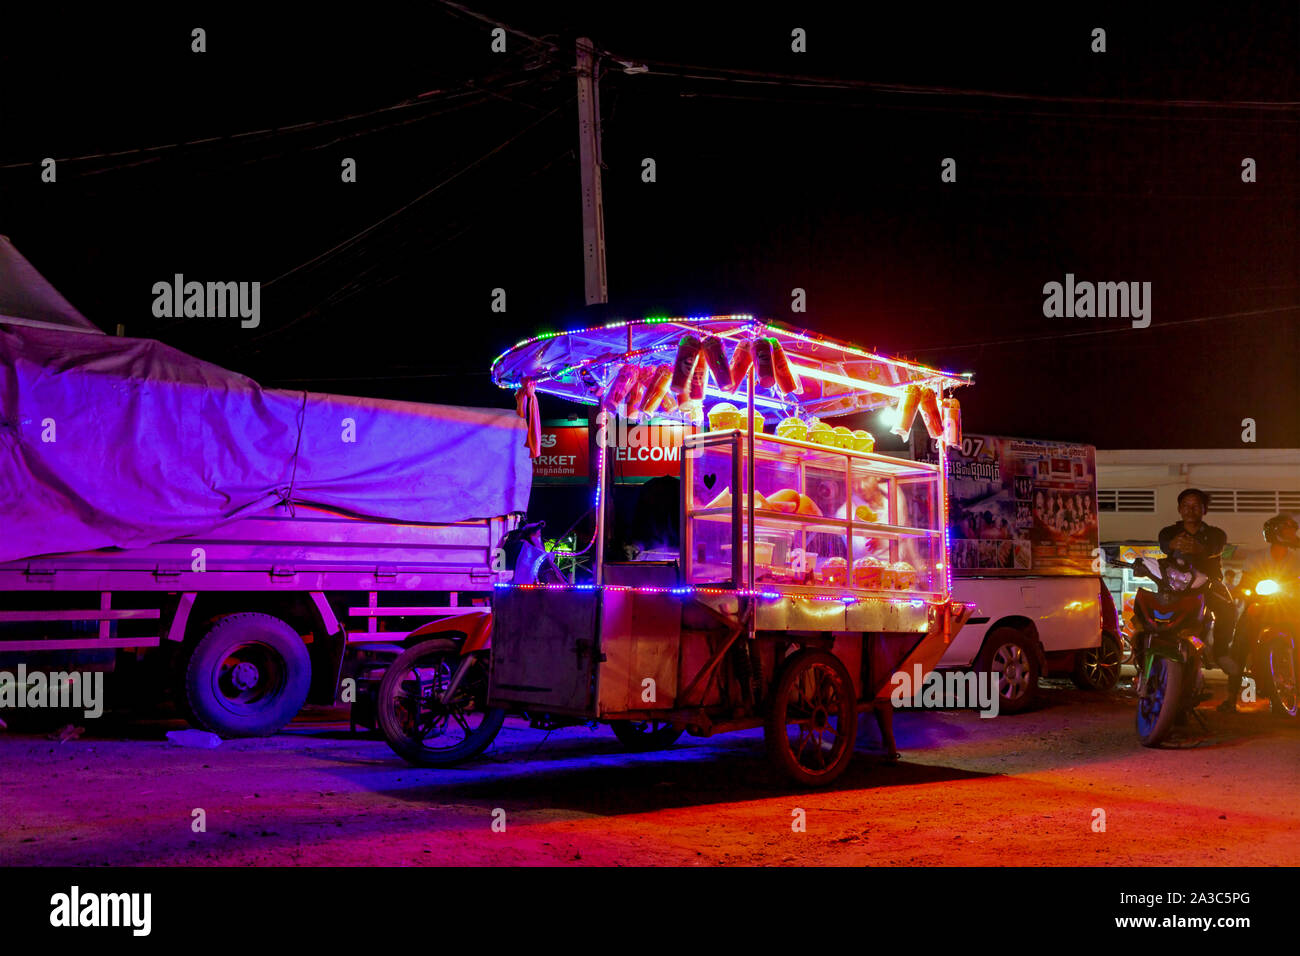 Ein Anbieter Verkauf von Popcorn von einer Karre auf einem Motorrad befestigt ist neben einem Karneval und Messe auf eine Stange in Kampong Cham, Kambodscha geparkt. Stockfoto